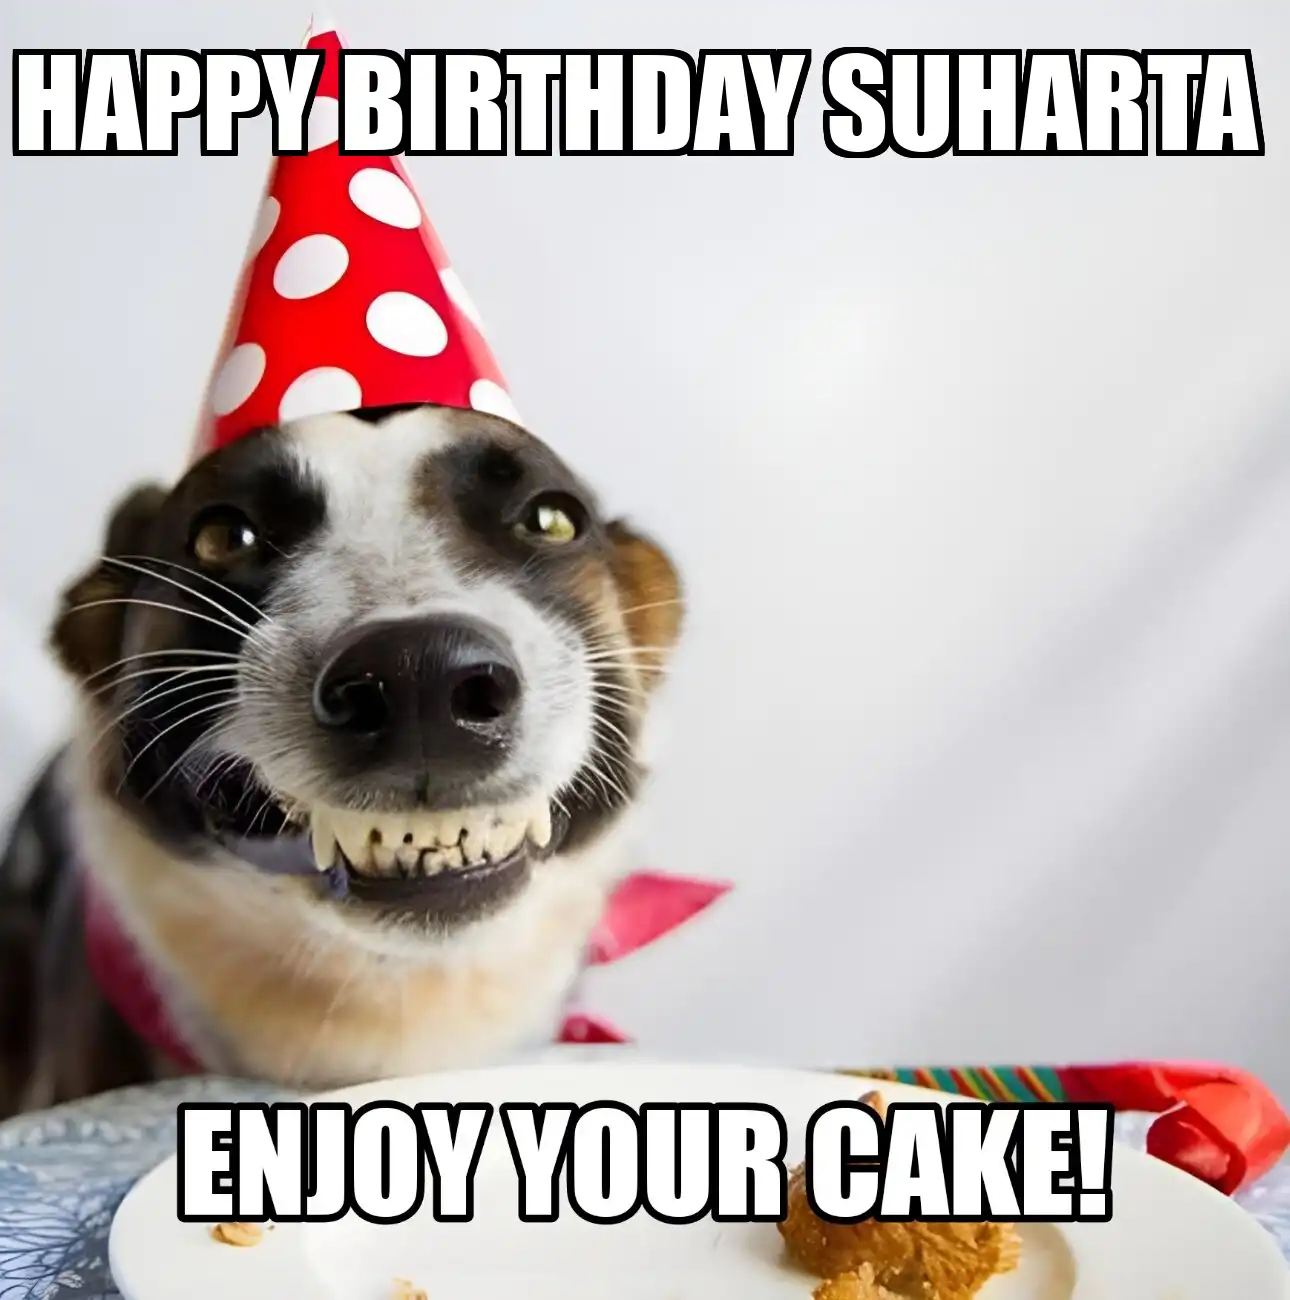 Happy Birthday Suharta Enjoy Your Cake Dog Meme